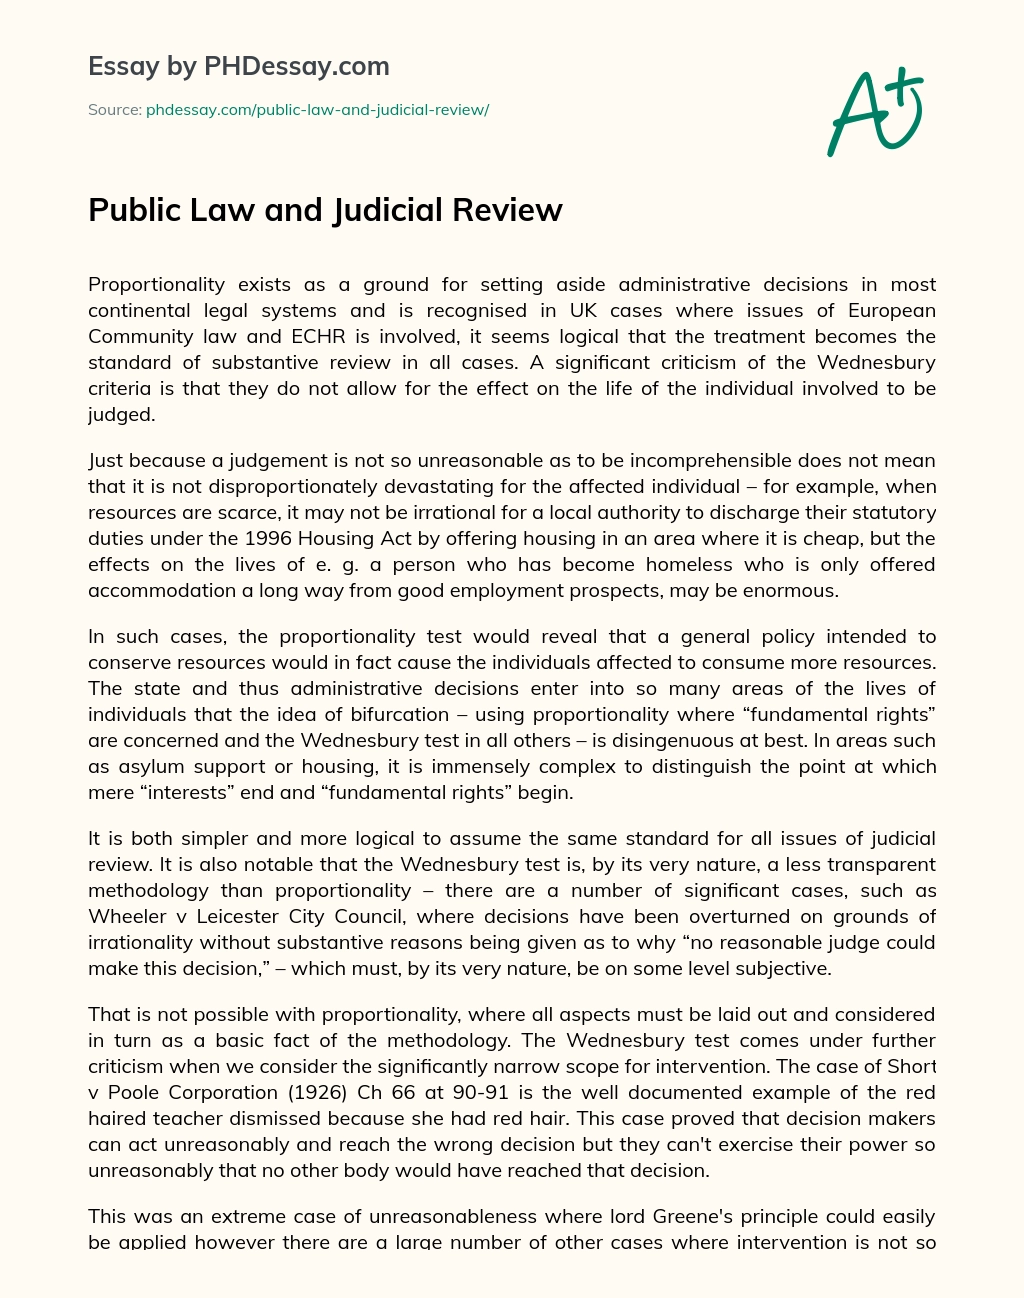 judicial review essay topics